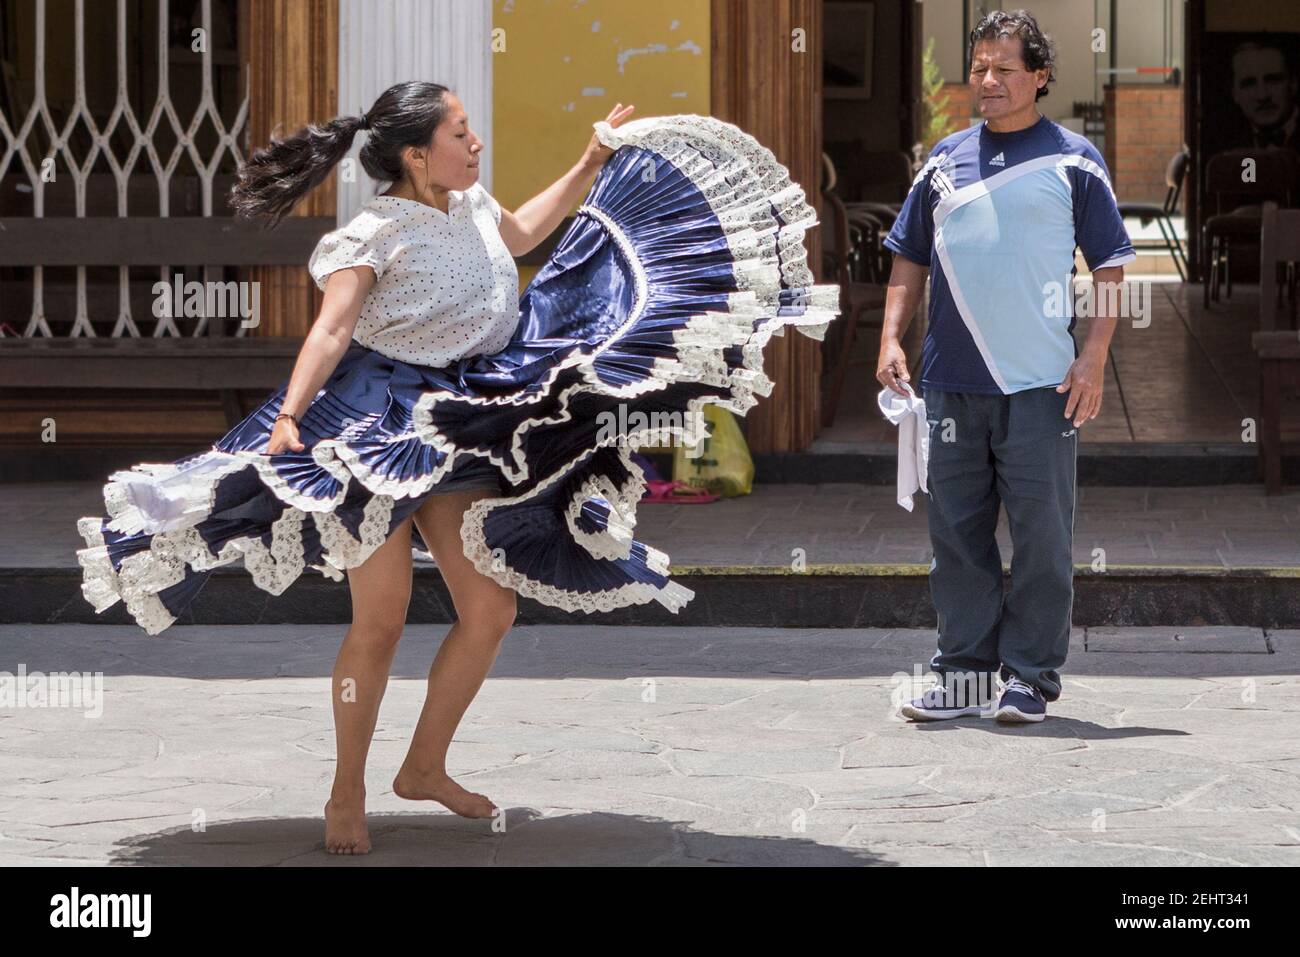 La pratique de la Marinera traditionnelle, élégante et stylisée reconstitution d'une danse d'audience, Trujillo, Pérou Banque D'Images